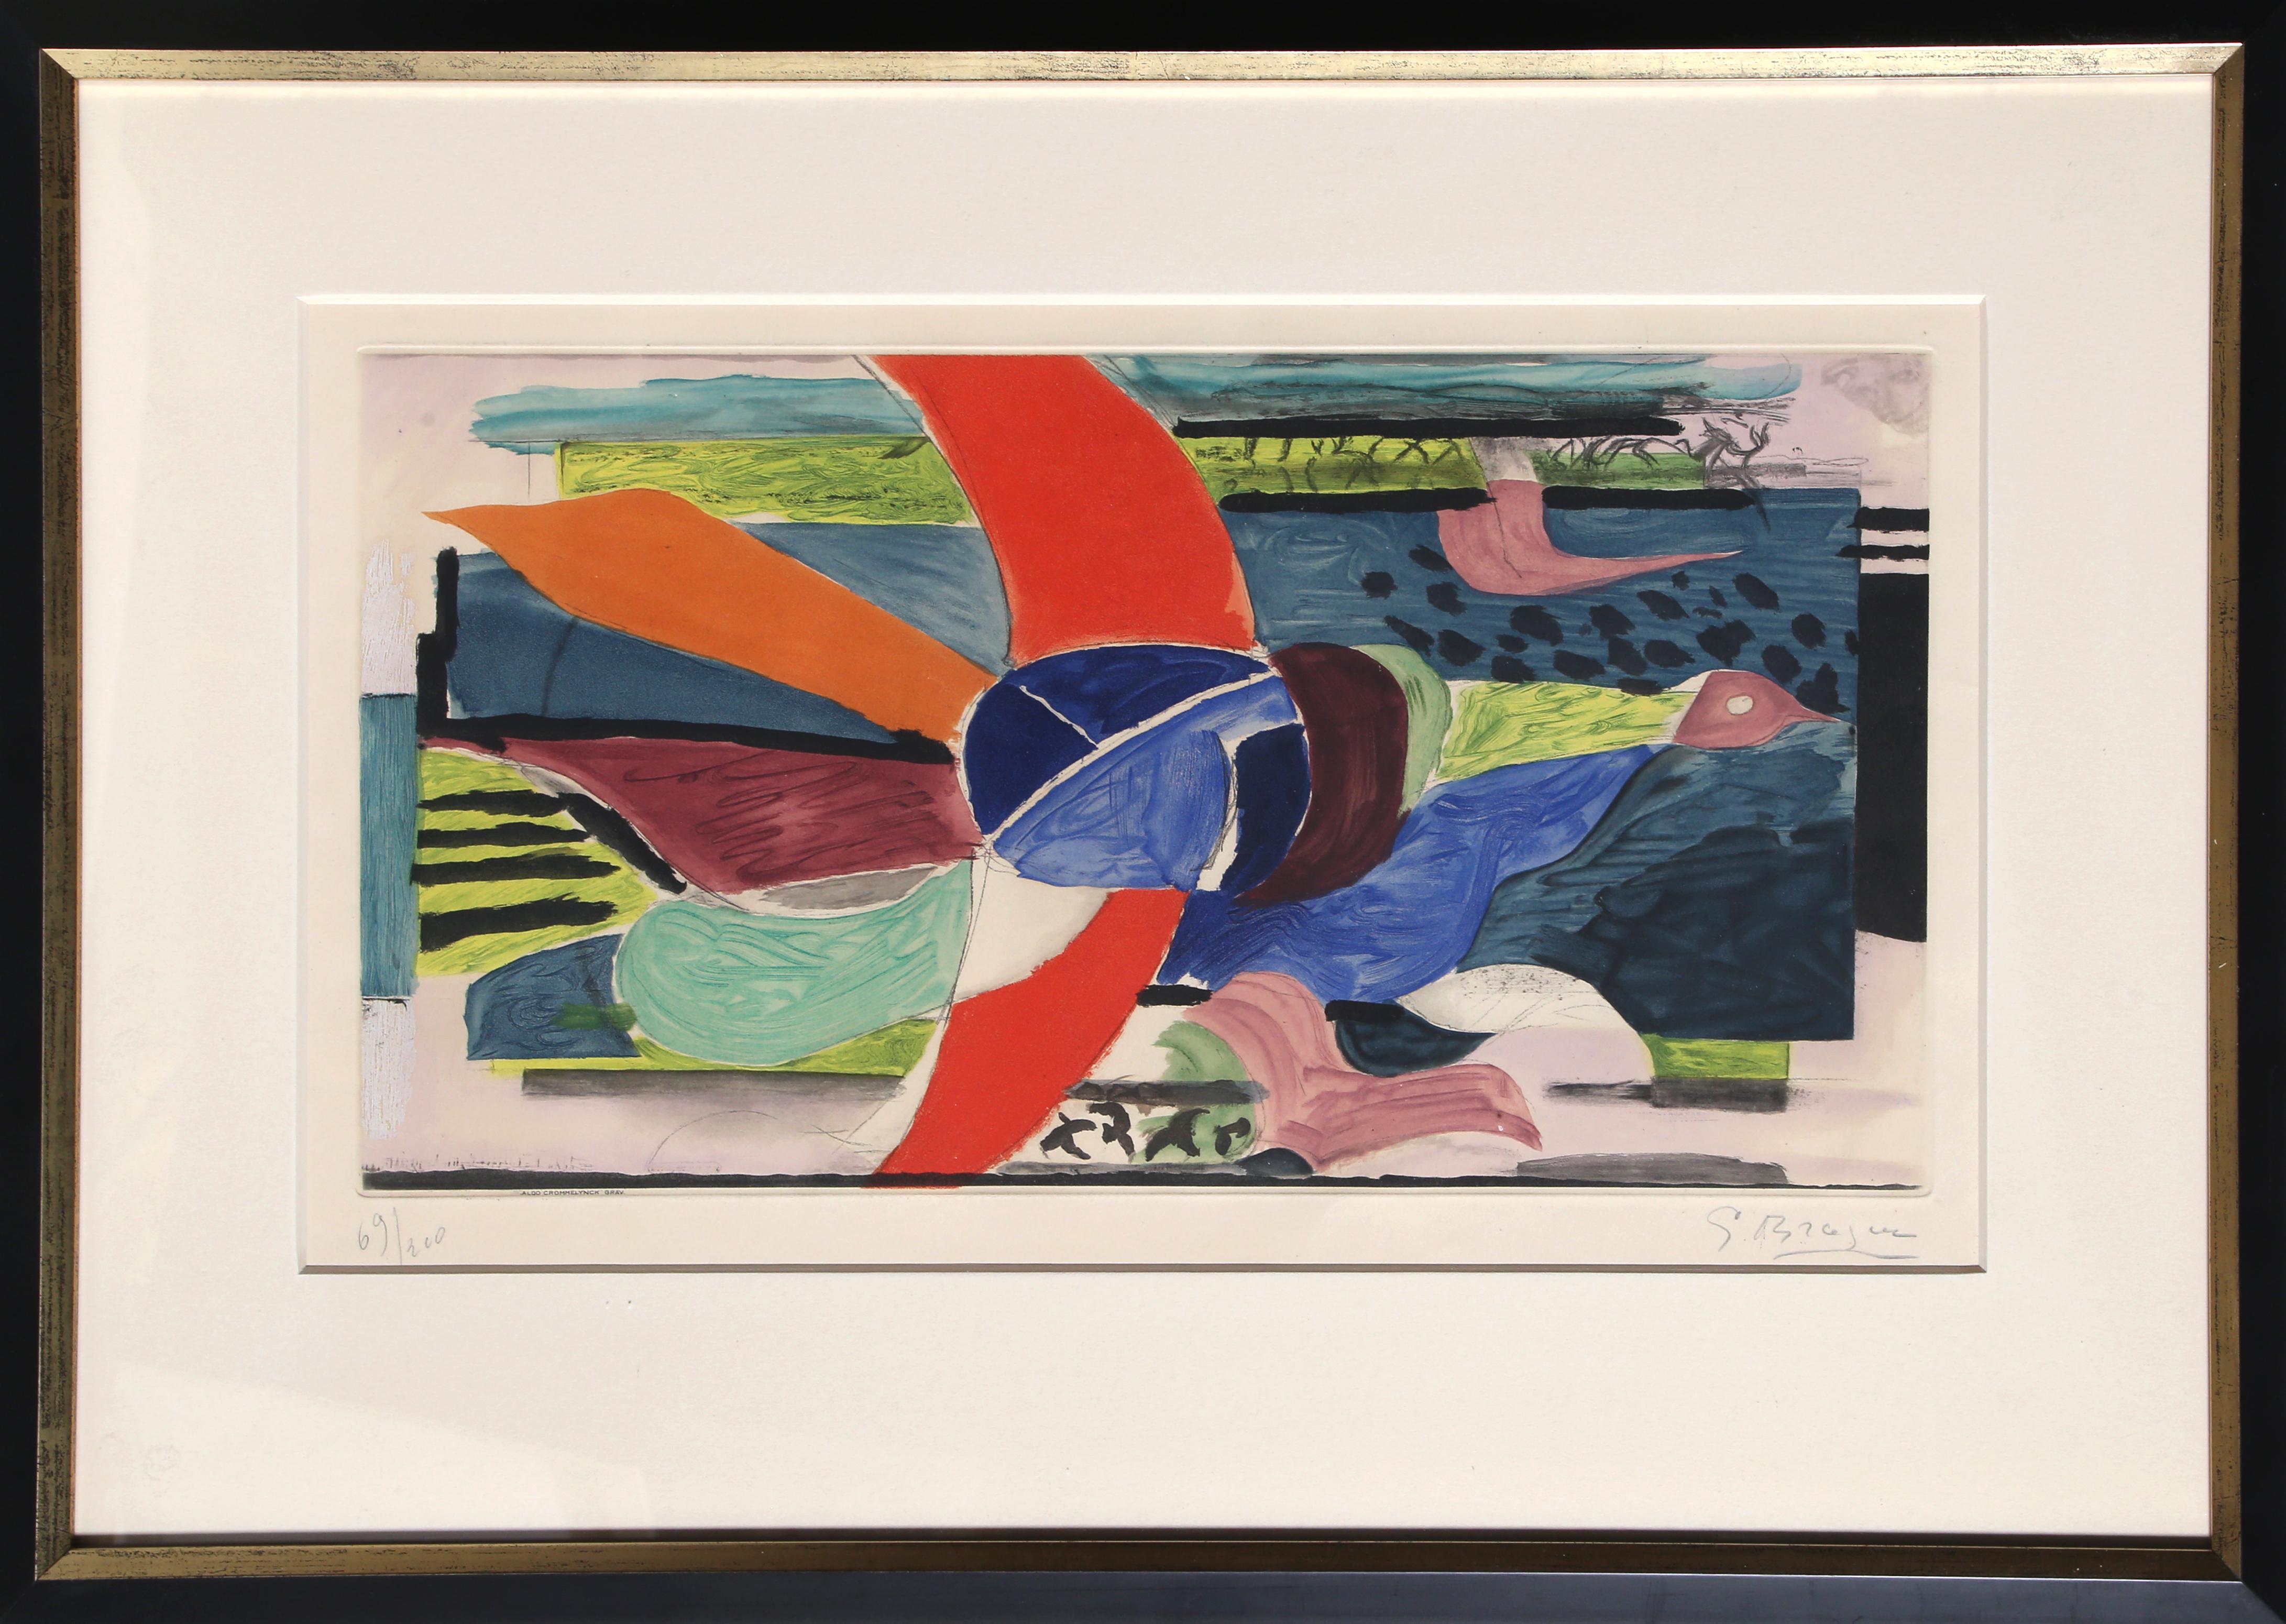 Oiseau Multicolore von Georges Braque, Franzose (1882-1963)
Datum: 1950
Aquatinta-Radierung, mit Bleistift signiert und nummeriert
Ausgabe von 69/200
Bildgröße: 10 x 19,5 Zoll
Größe: 17,75 x 25,25 Zoll (45,09 x 64,14 cm)
Rahmengröße: 19,5 x 28